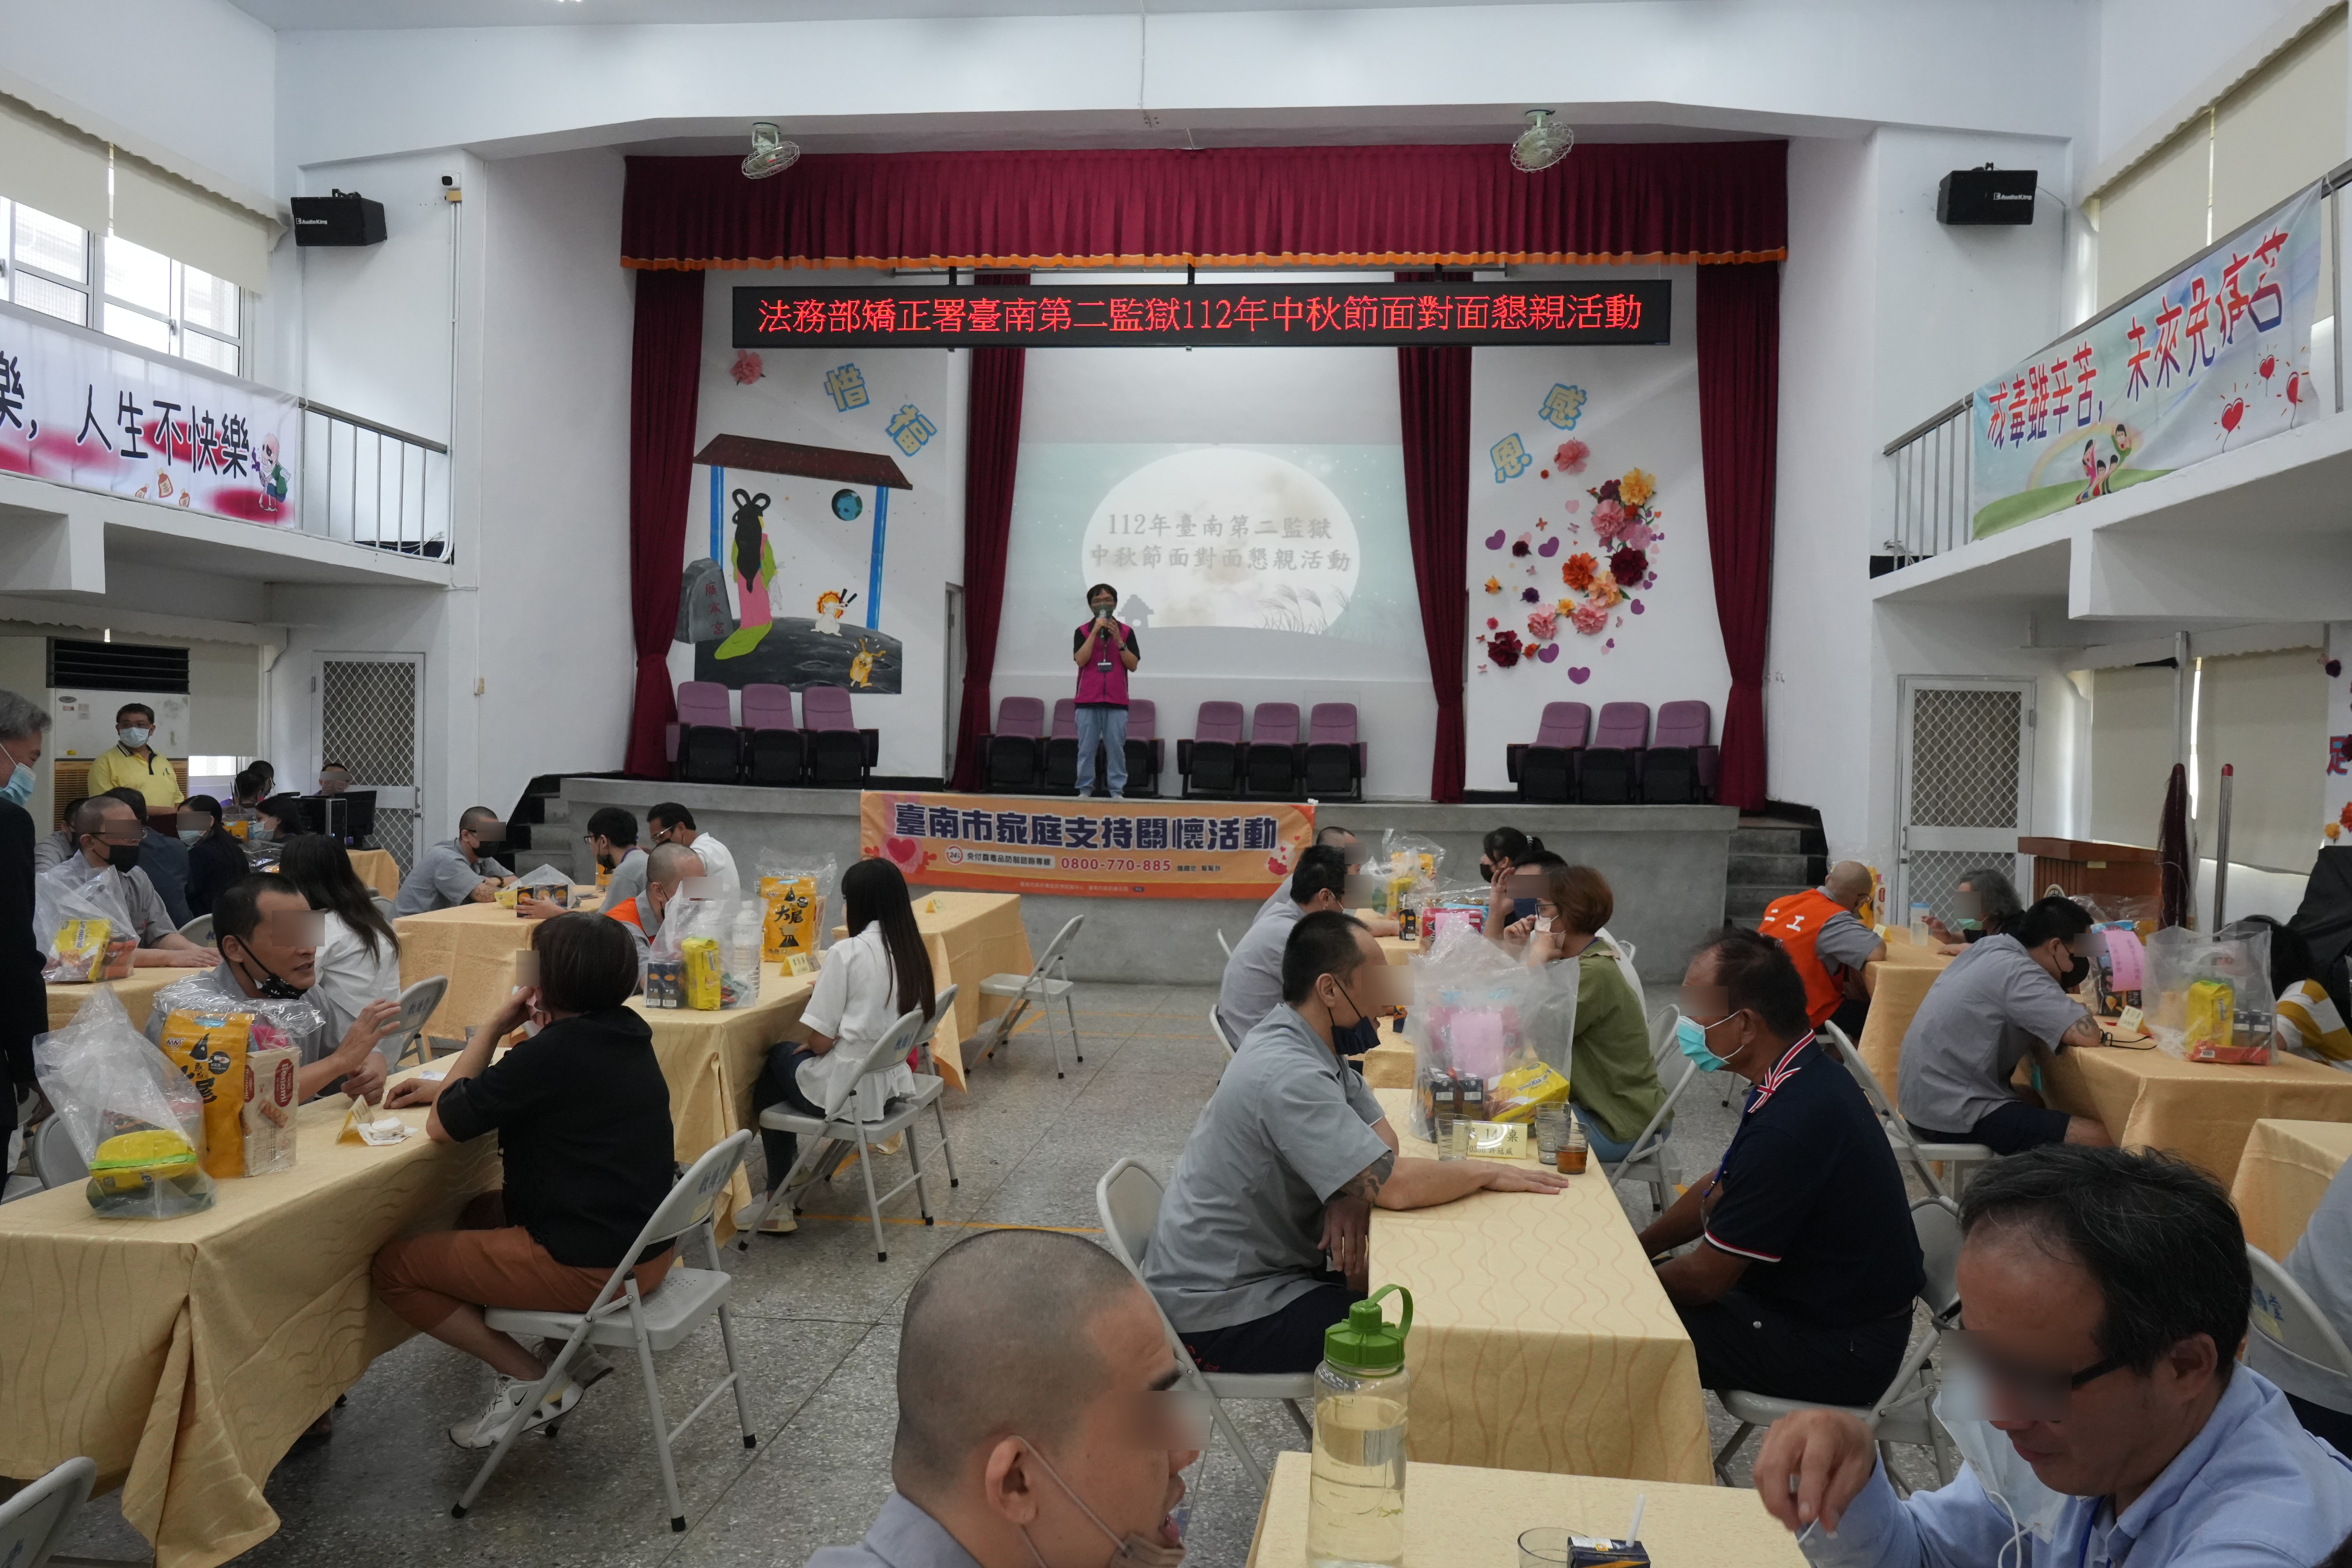 台南市衛生局毒防中心於中秋節懇親活動做家庭支持關懷宣導